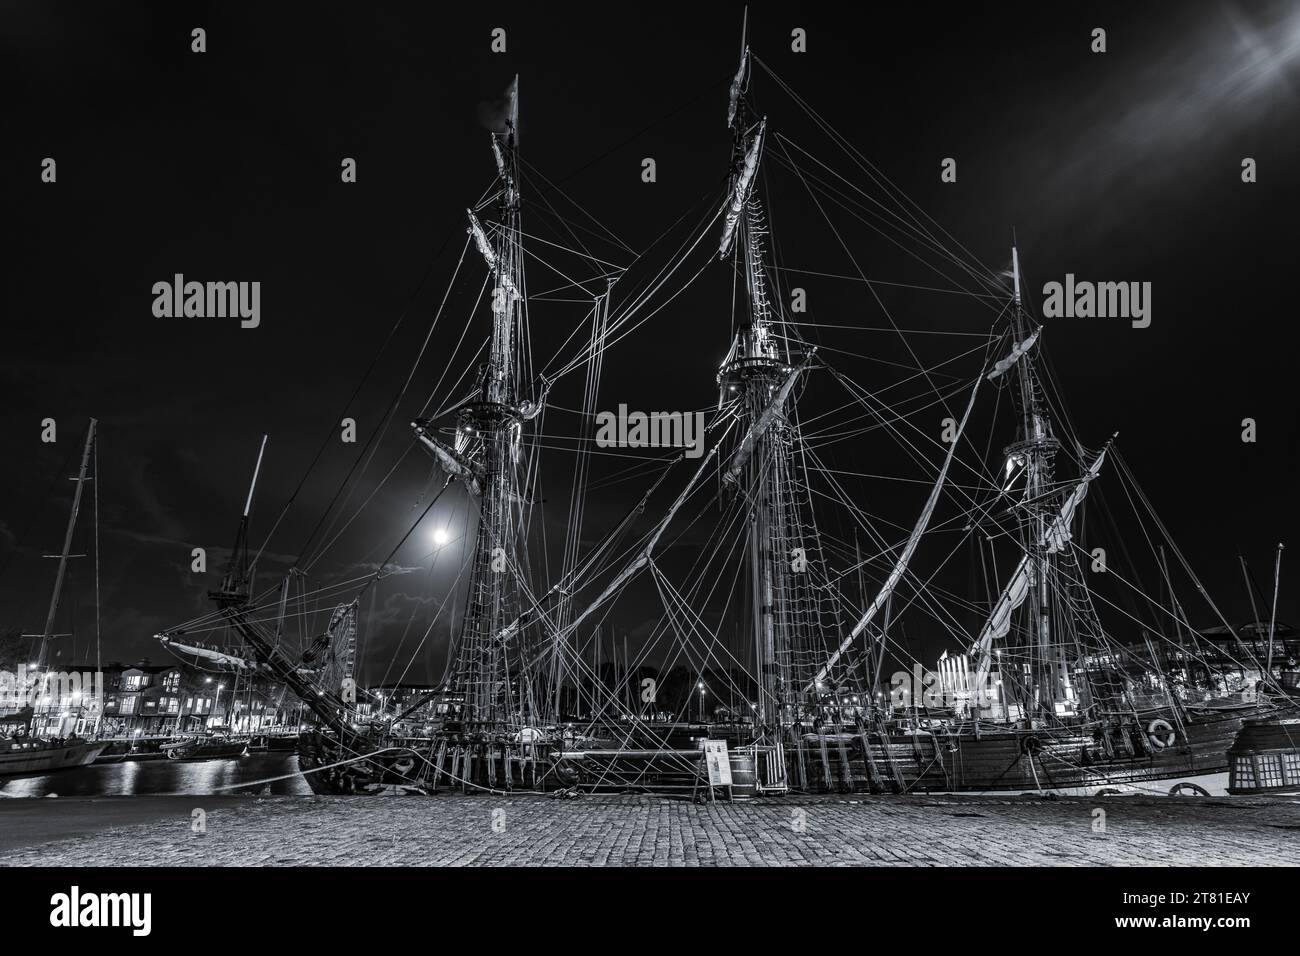 Vecchie navi a vela in legno ormeggiate nel porto di la Rochelle vicino al quartiere di gabut. ripresa notturna in bianco e nero Foto Stock